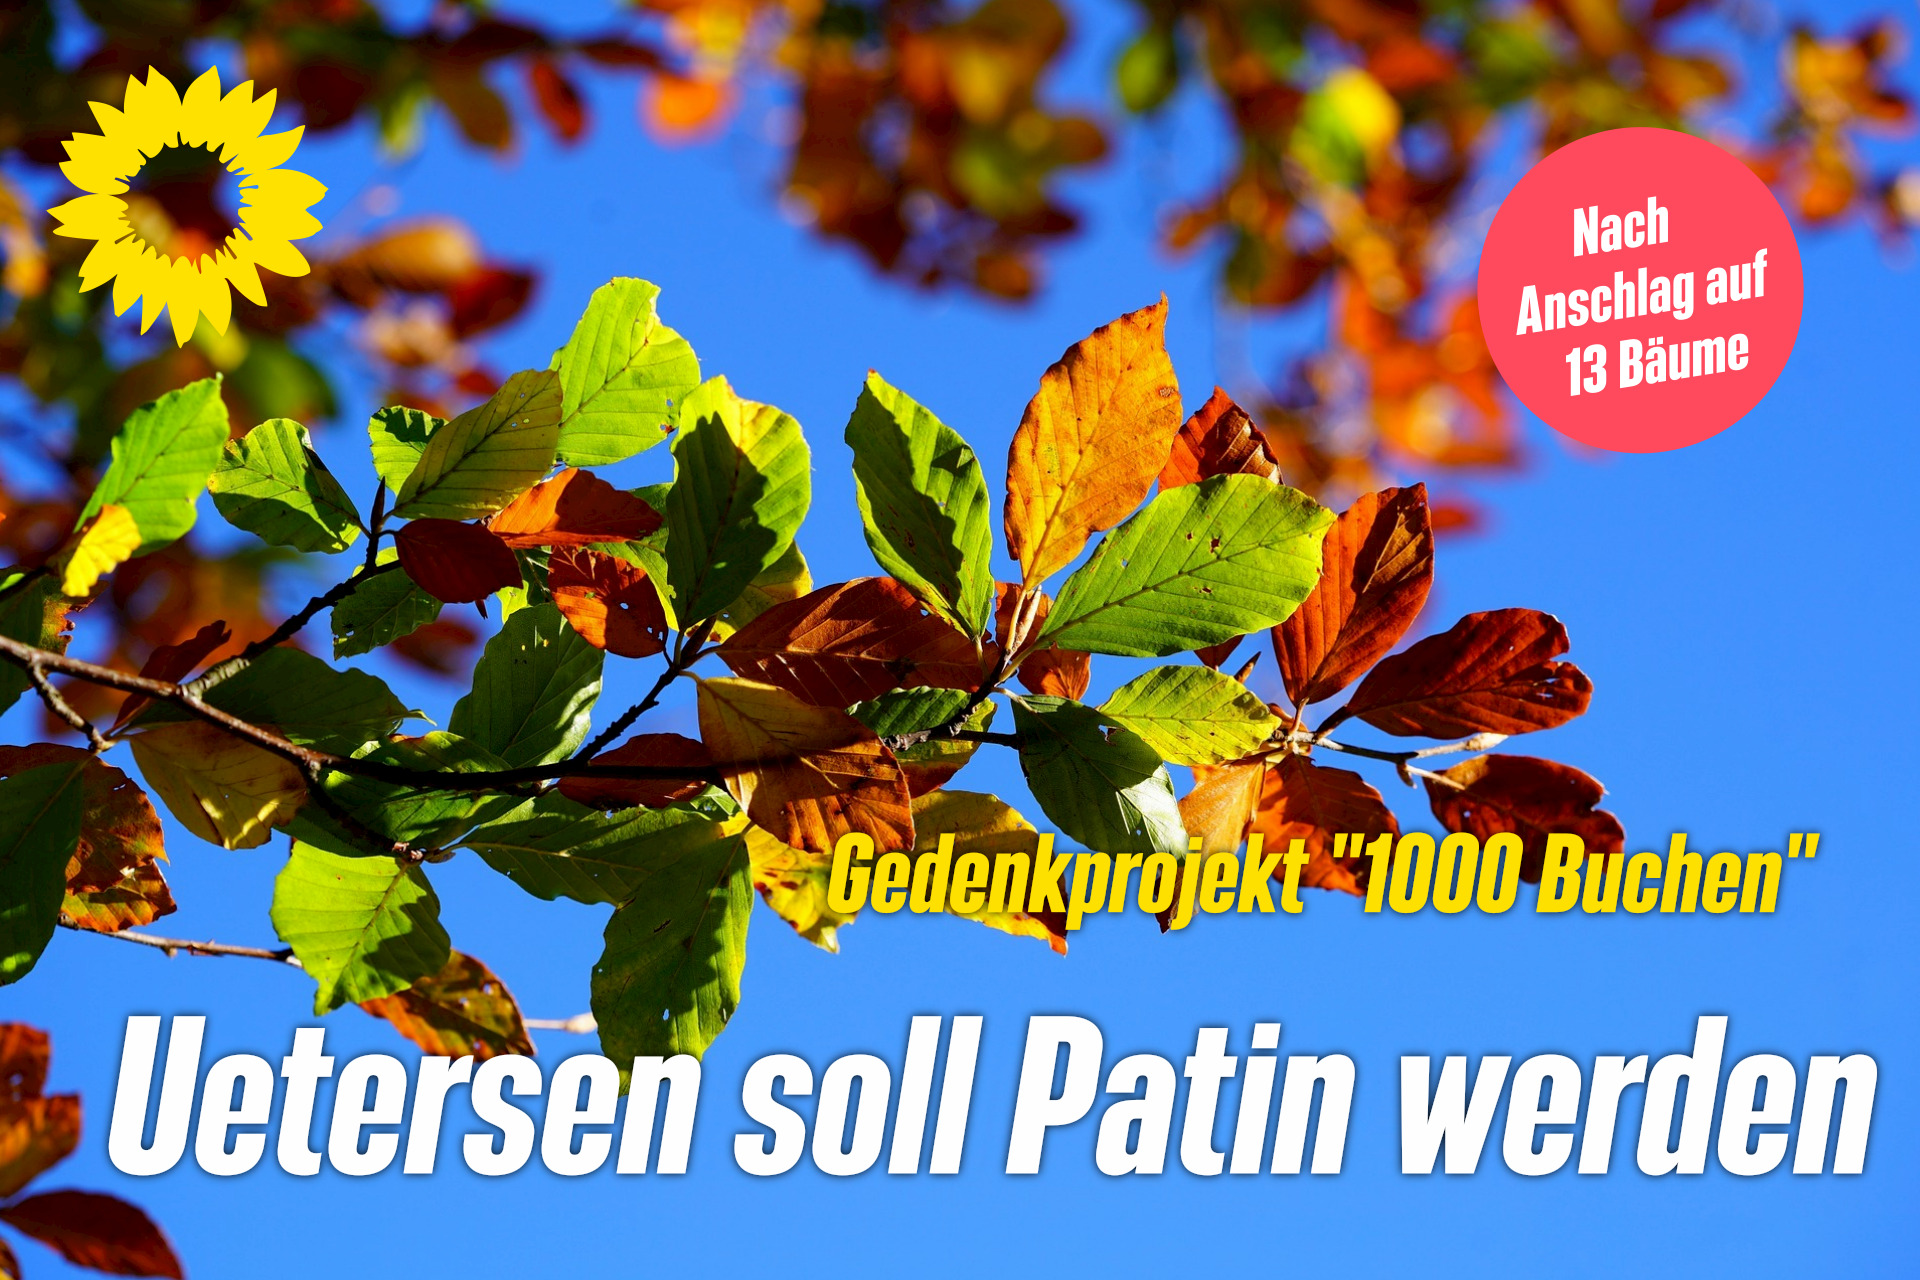 Foto von einem Zweig mit buntem Herbstlaub vor blauem Himmel. Darauf der Text: "Uetersen soll Patin werden." Oben links die gelbe Sonnenblume der Grünen.